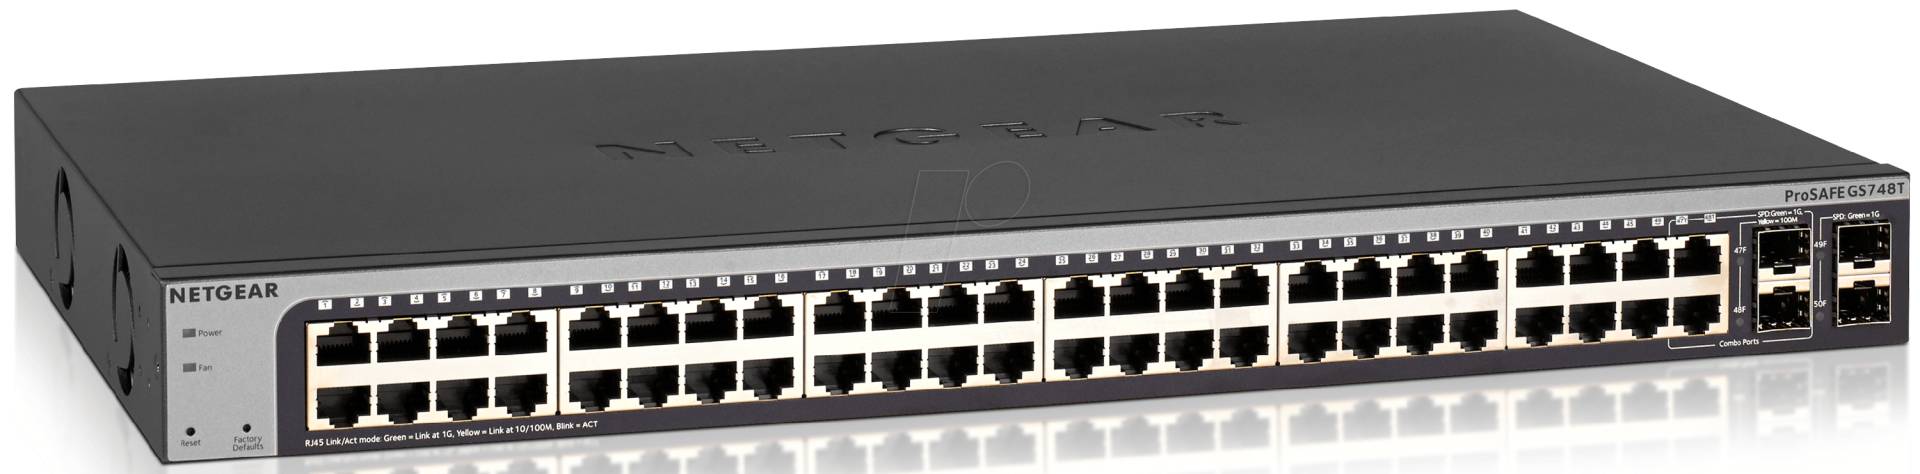 NETGEAR GS748T - Switch, 48-Port, Gigabit Ethernet von Netgear